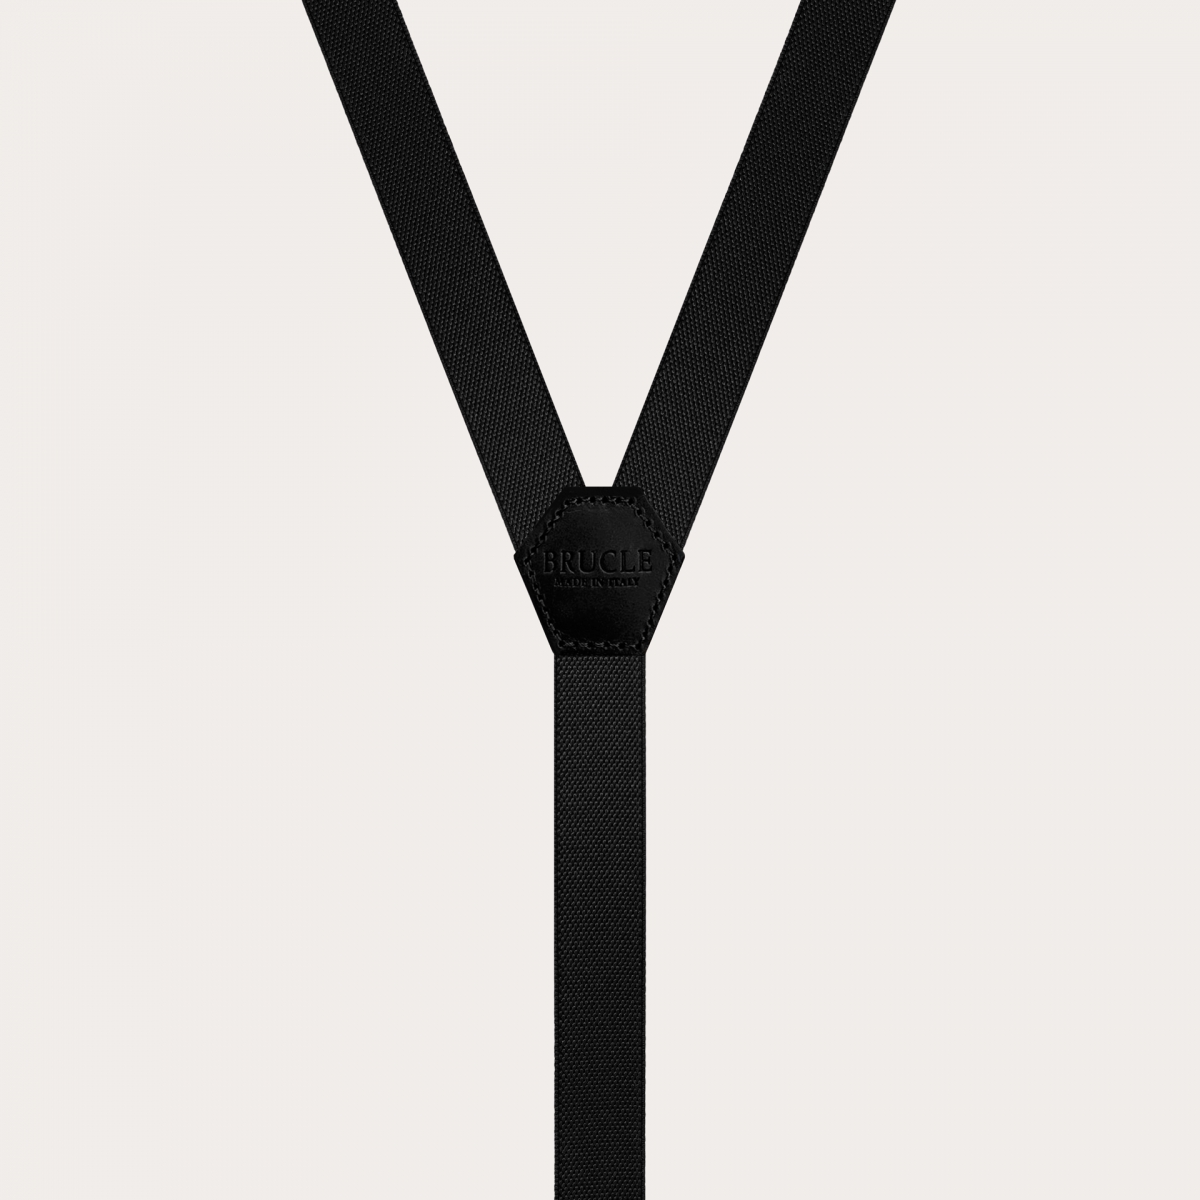 Bretelle strette a Y unisex, per bambini e ragazzi, colore nero